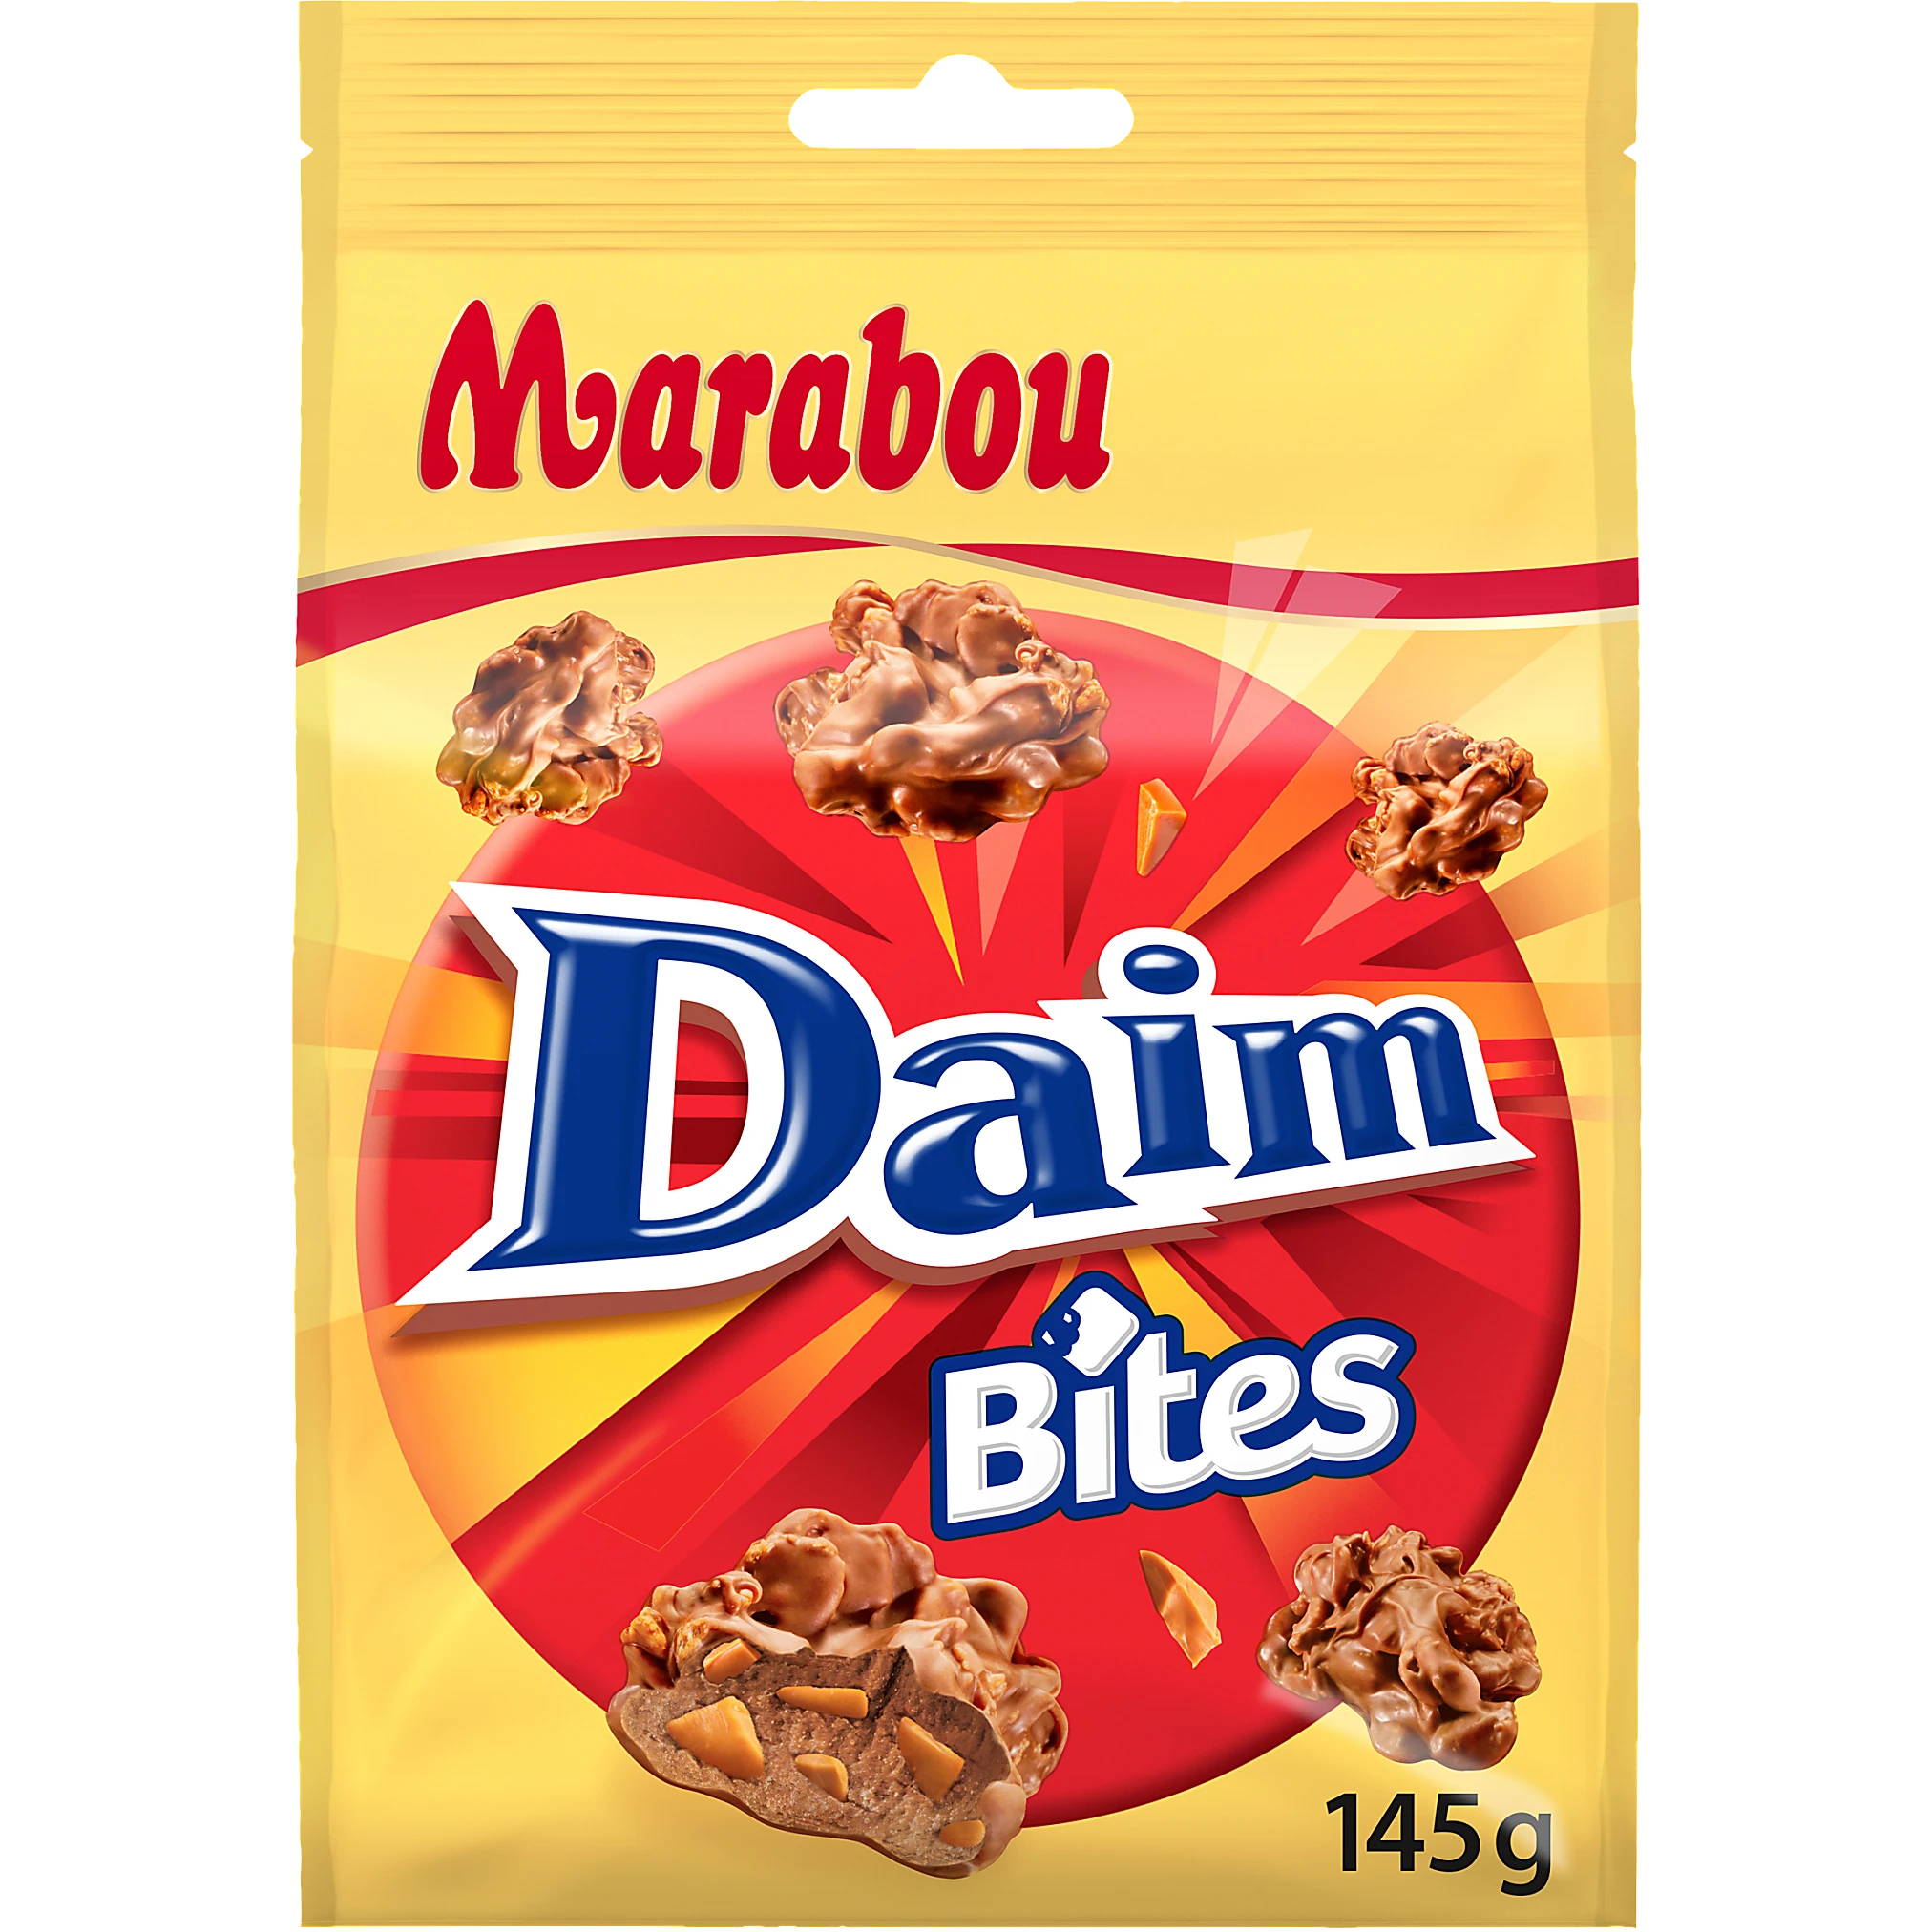 Marabou Daim Bites